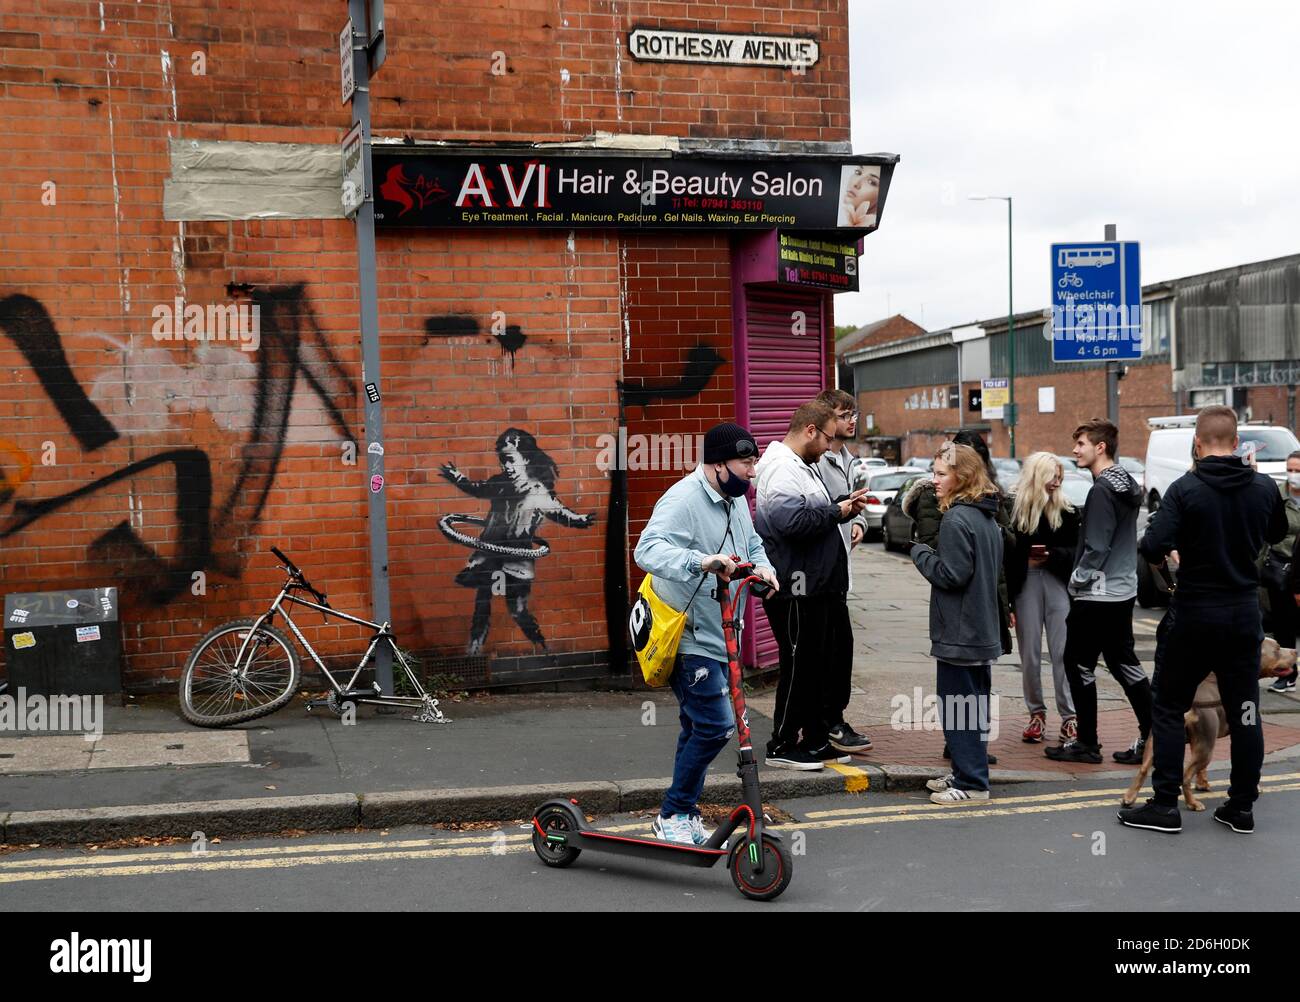 Nottingham, Nottinghamshire, Großbritannien. Oktober 2020. Ein Mann sucht sich ein Werk des Graffiti-Künstlers Banksy. Die Arbeit, außerhalb eines Schönheitssalons, zeigt ein Mädchen Hula-Hooping mit einem Fahrradreifen neben einem Fahrrad, das sein Hinterrad fehlt. Credit Darren Staples/Alamy Live News. Stockfoto